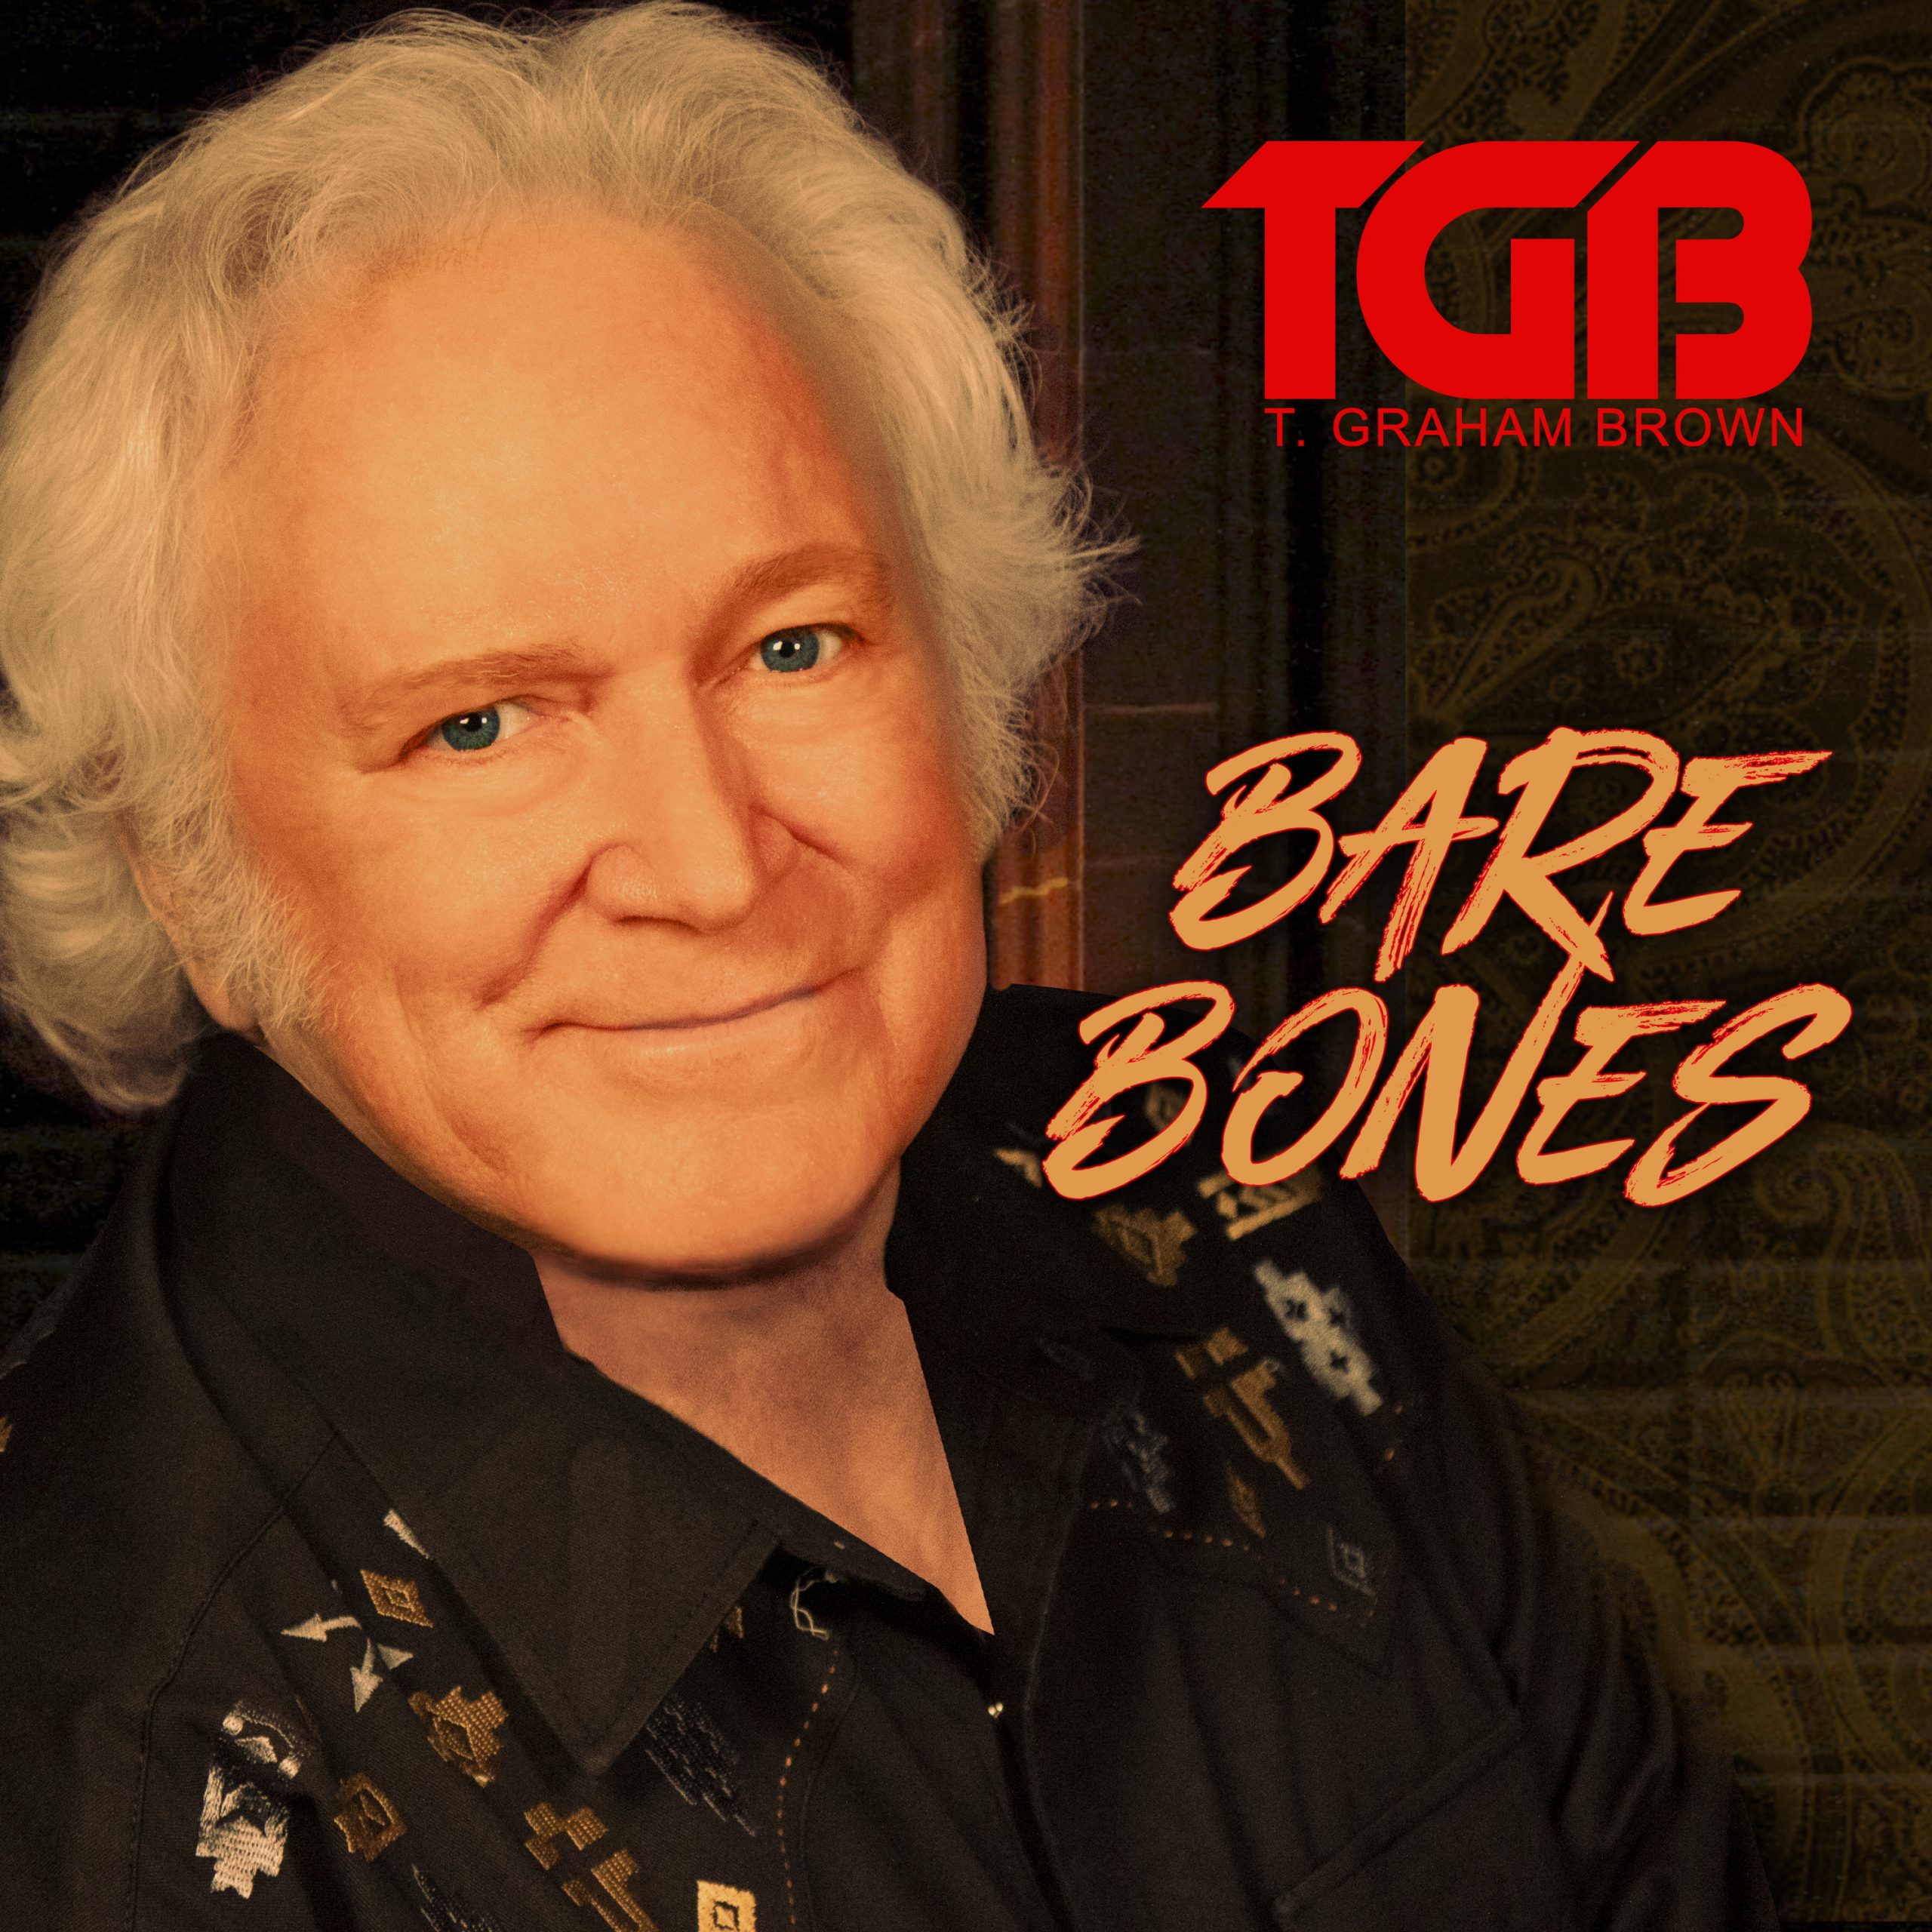 Bare Bones – Autographed CD